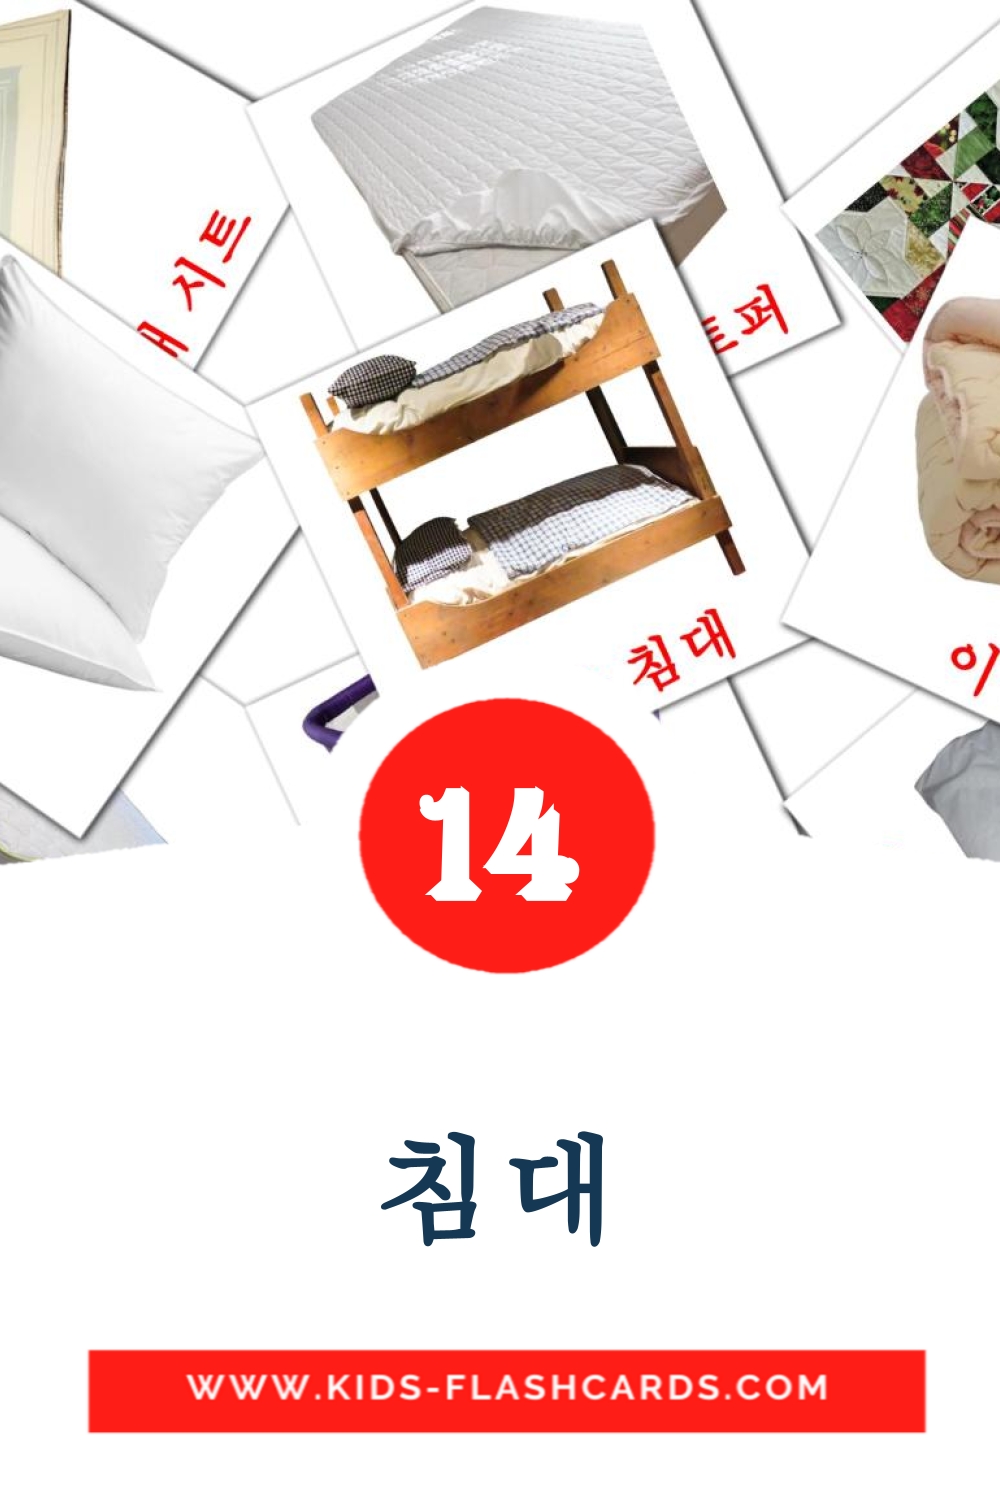 14 침대 fotokaarten voor kleuters in het koreaanse